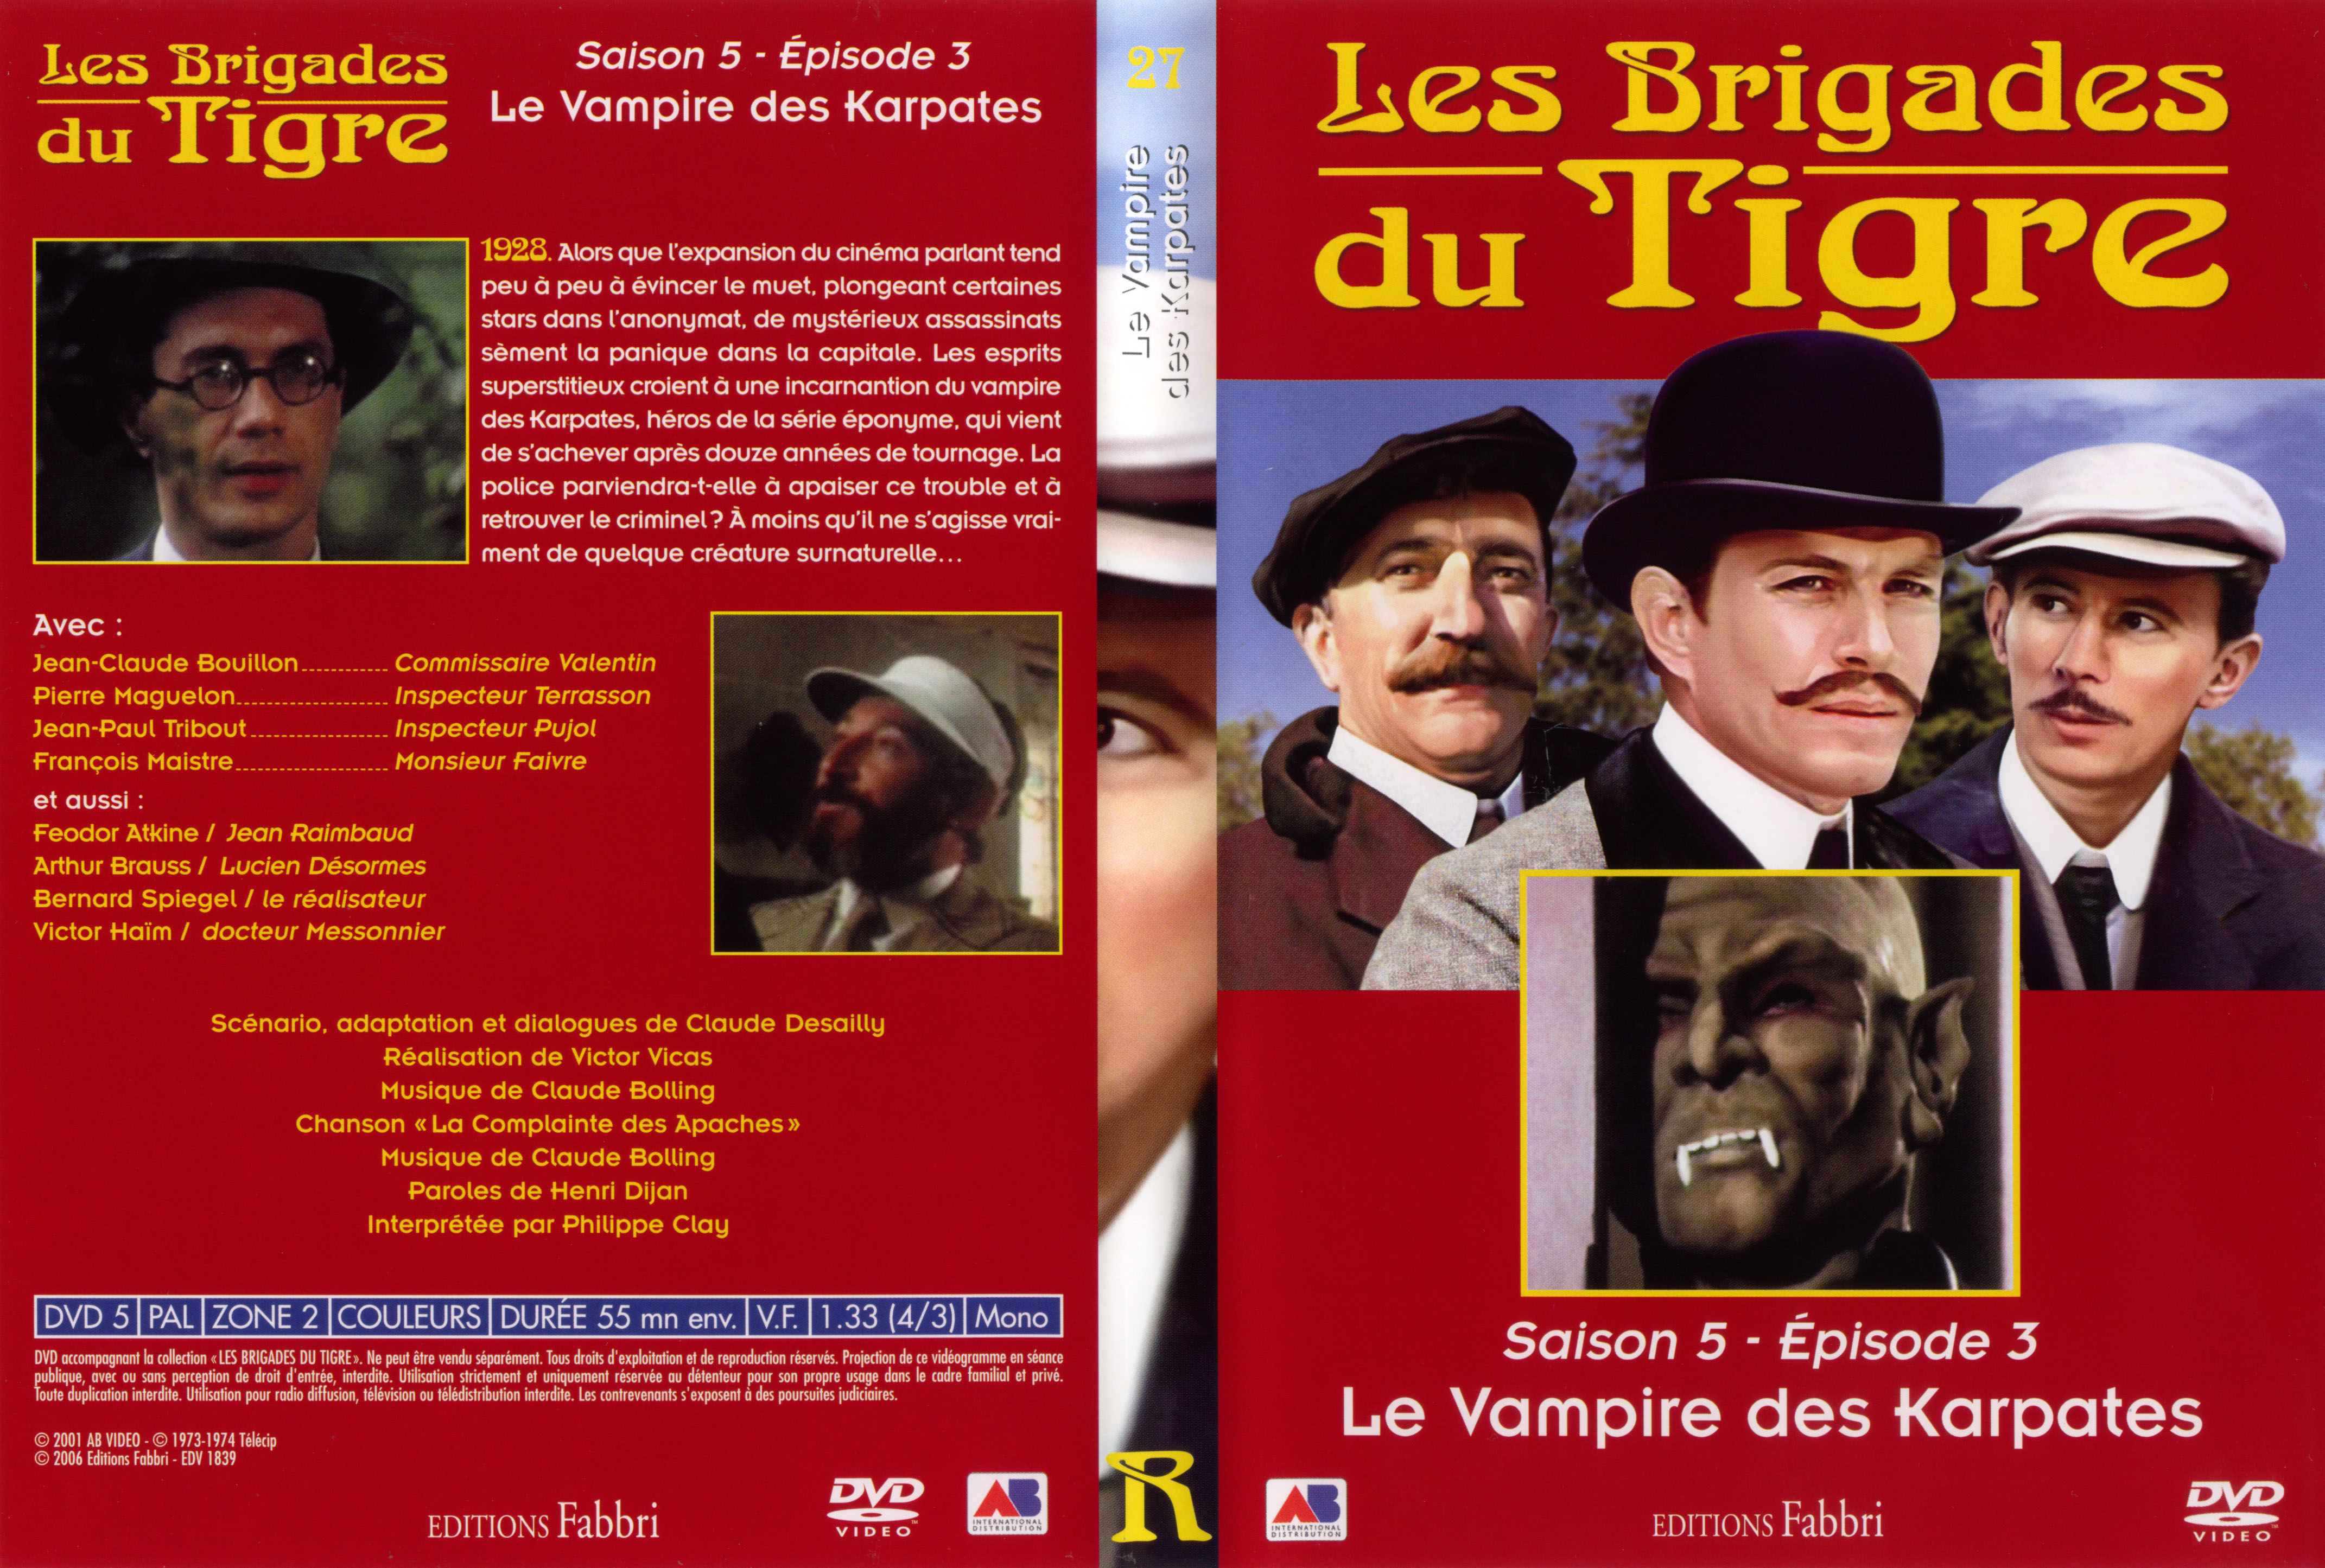 Jaquette DVD Les brigades du tigre saison 5 pisode 3